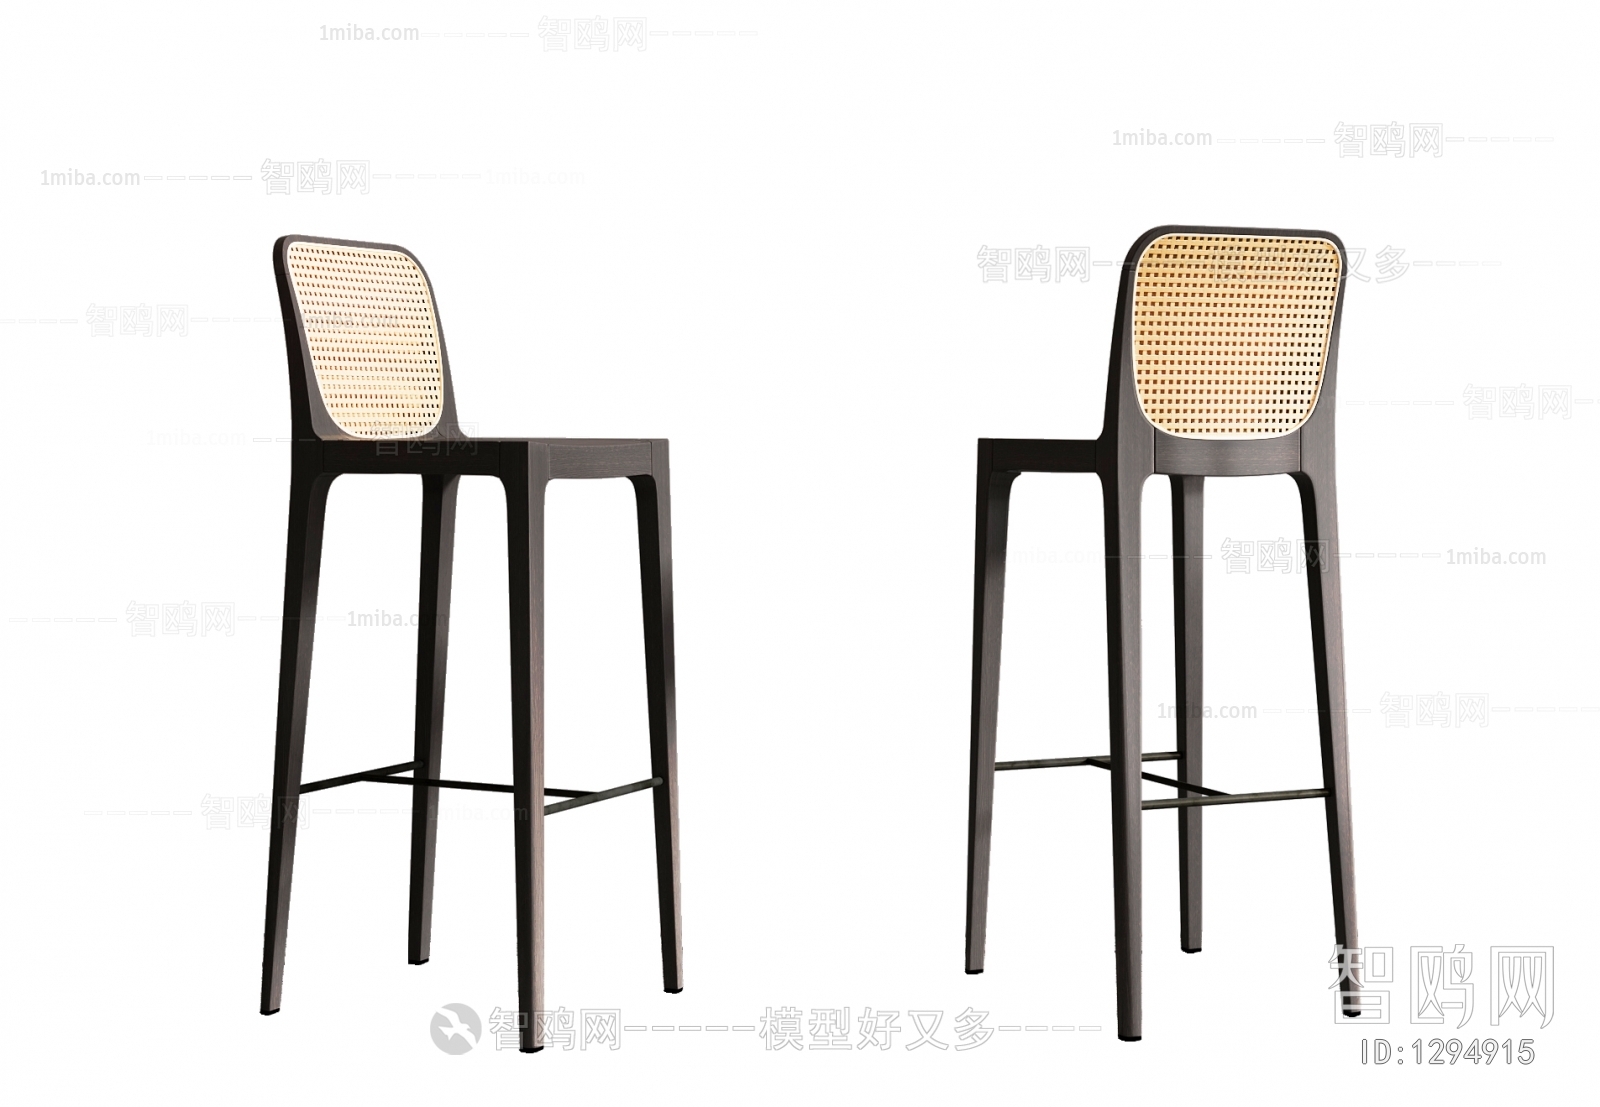 Wabi-sabi Style Bar Chair